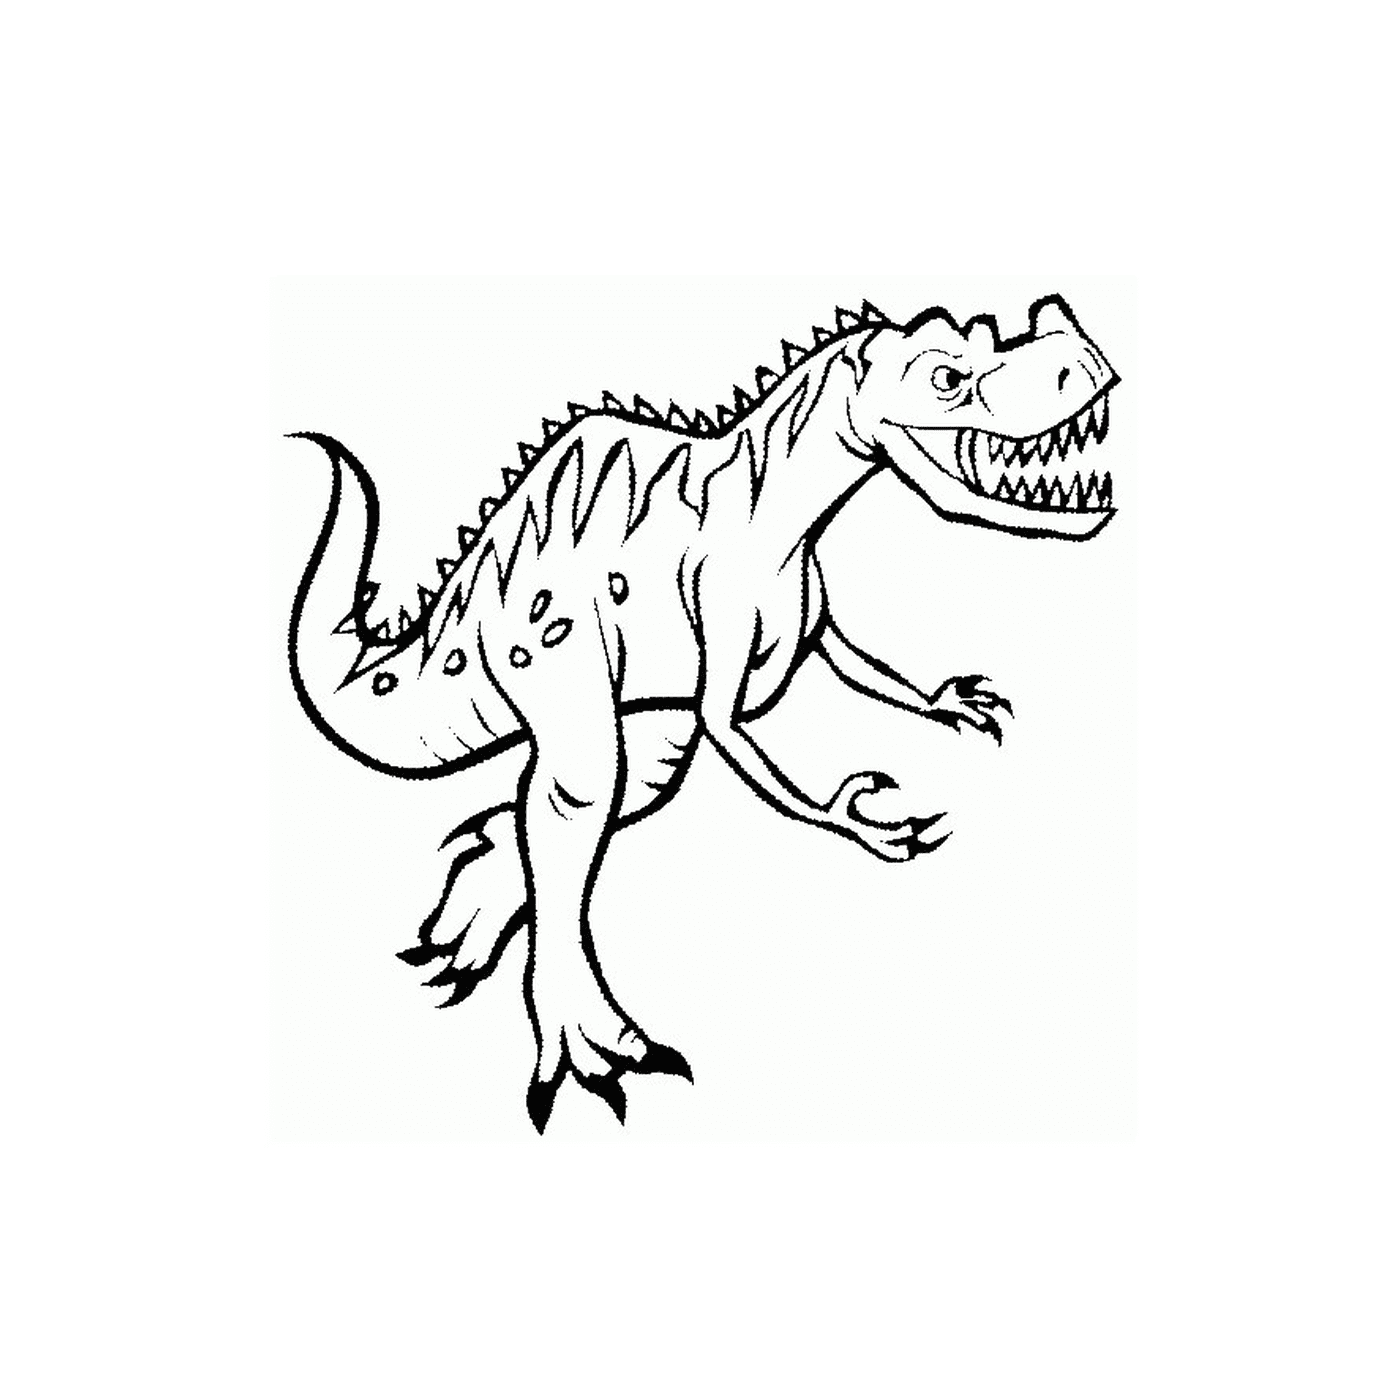  A t-rex 